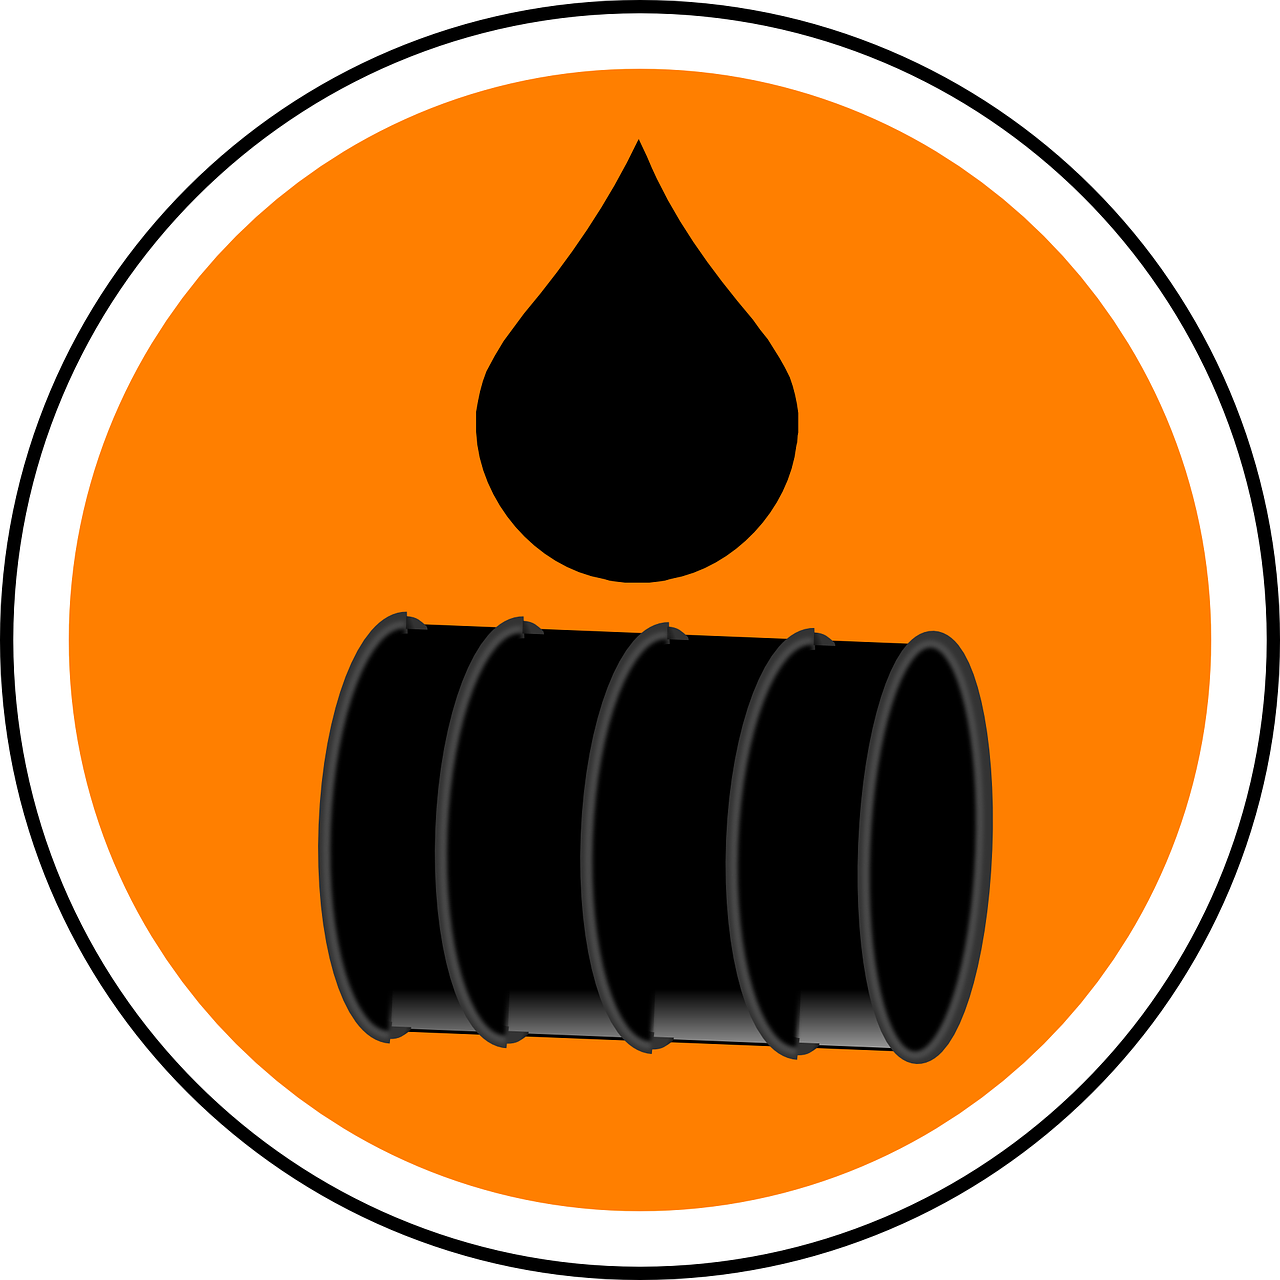 Oil Refineries - Derrame De Aceite Png (1280x1280)